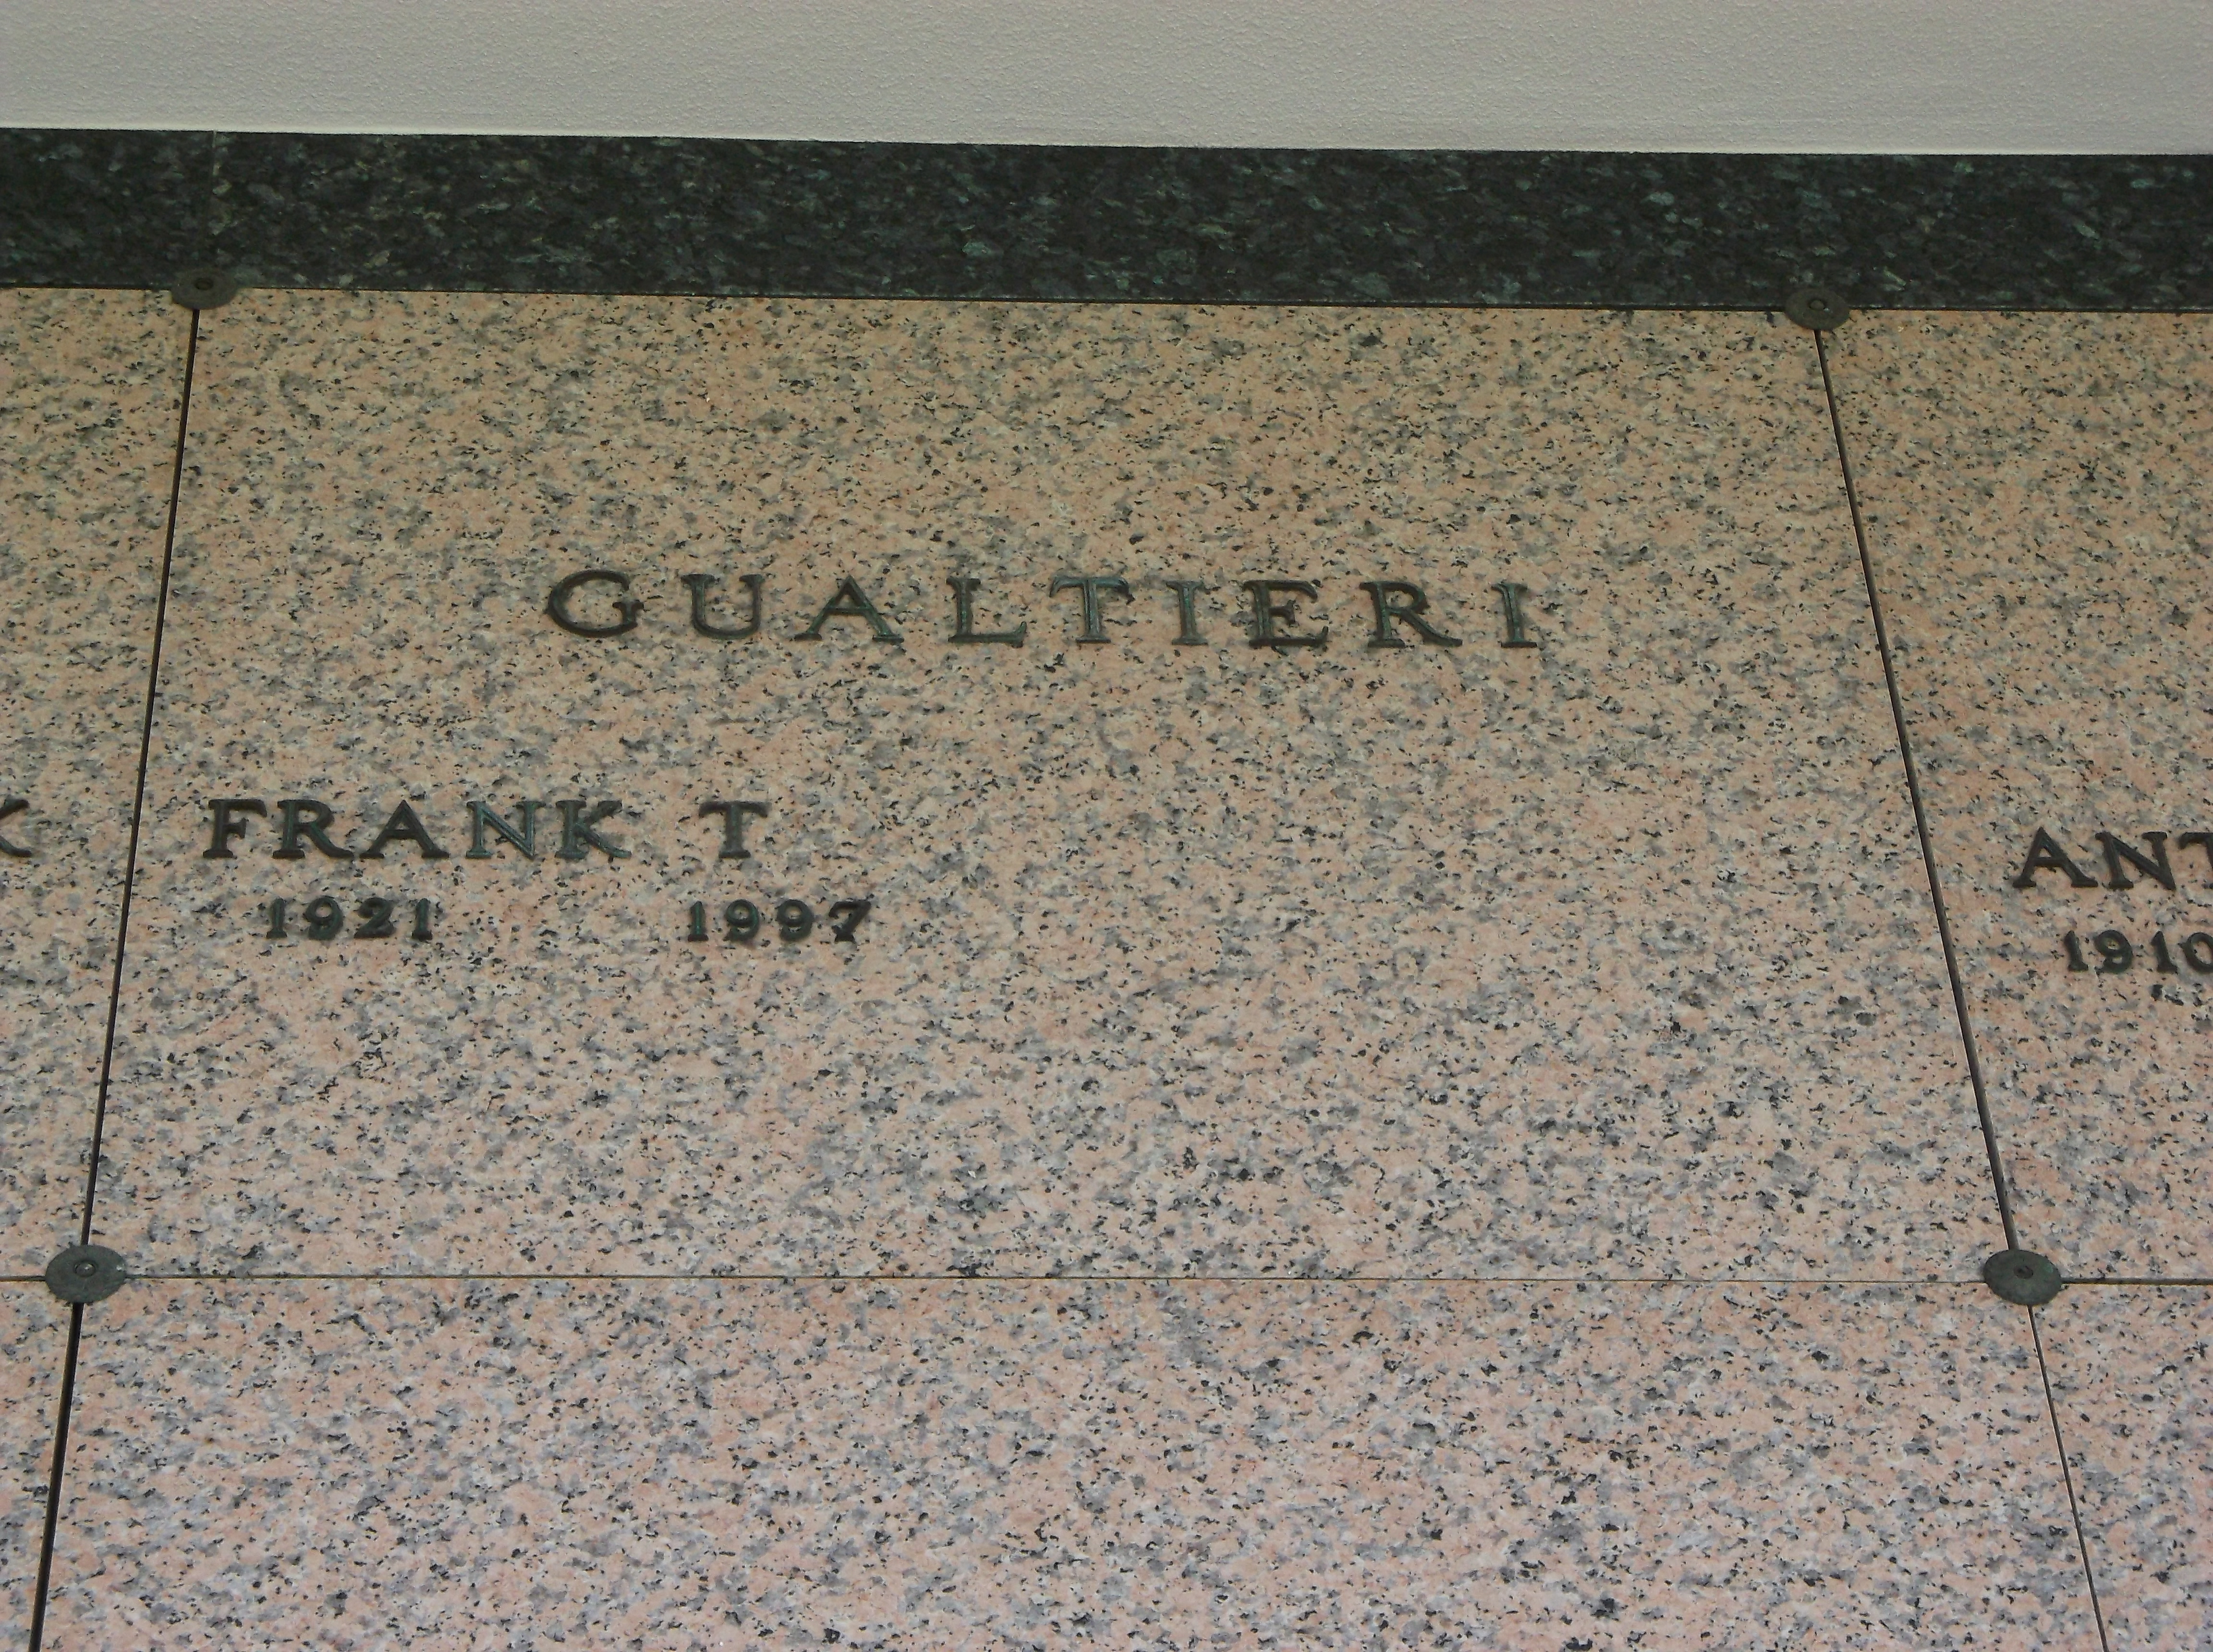 Frank T Gualtieri